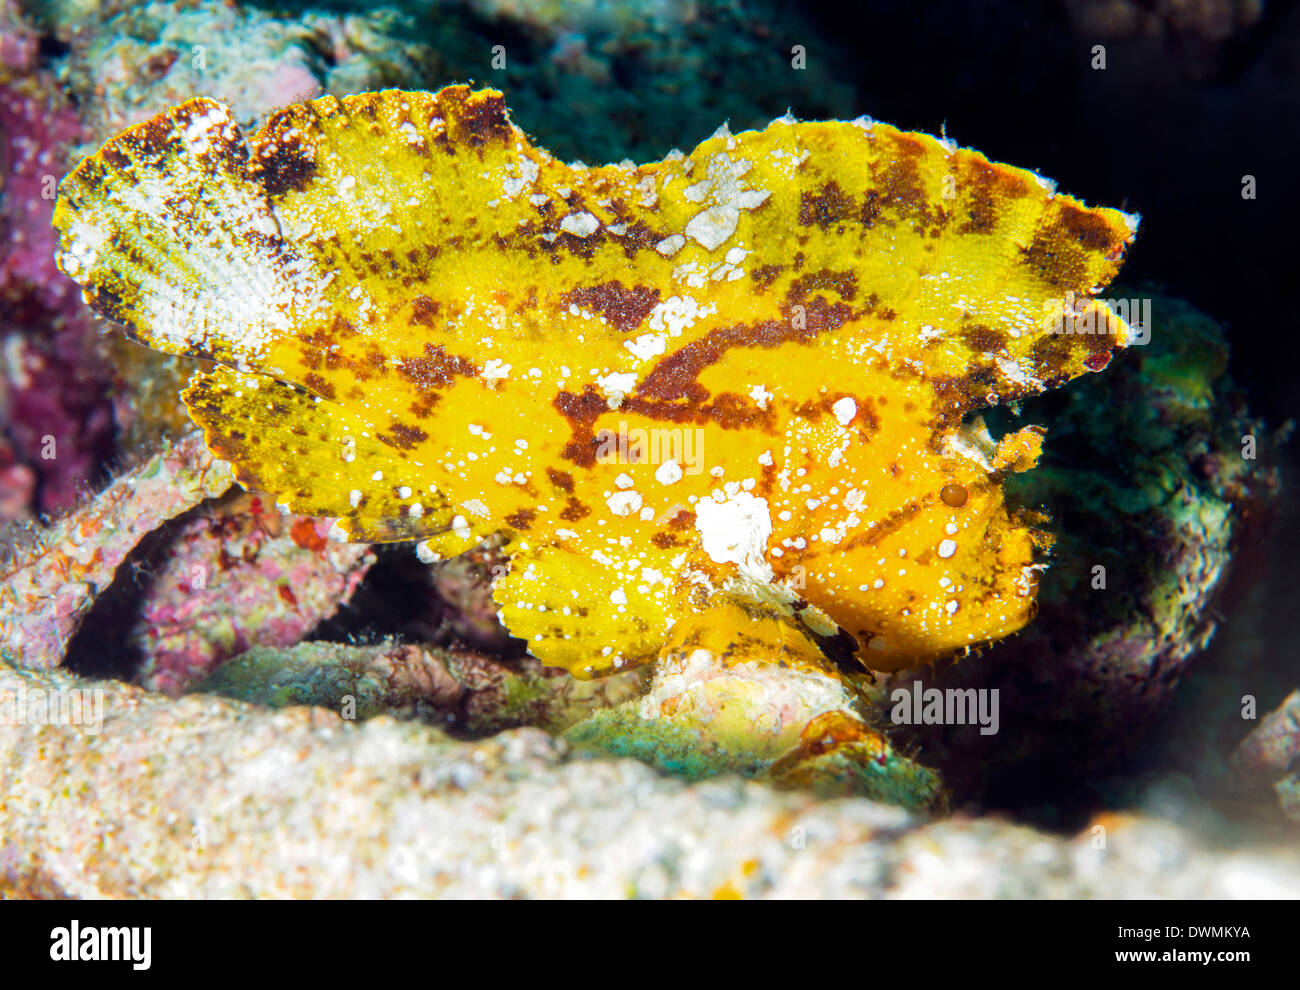 Taenianotus Triacanthus (poisson feuille), un prédateur sauvage trouvé amonst coraux, Mer de Célèbes, Sabah, Malaisie, Asie du Sud, Asie Banque D'Images